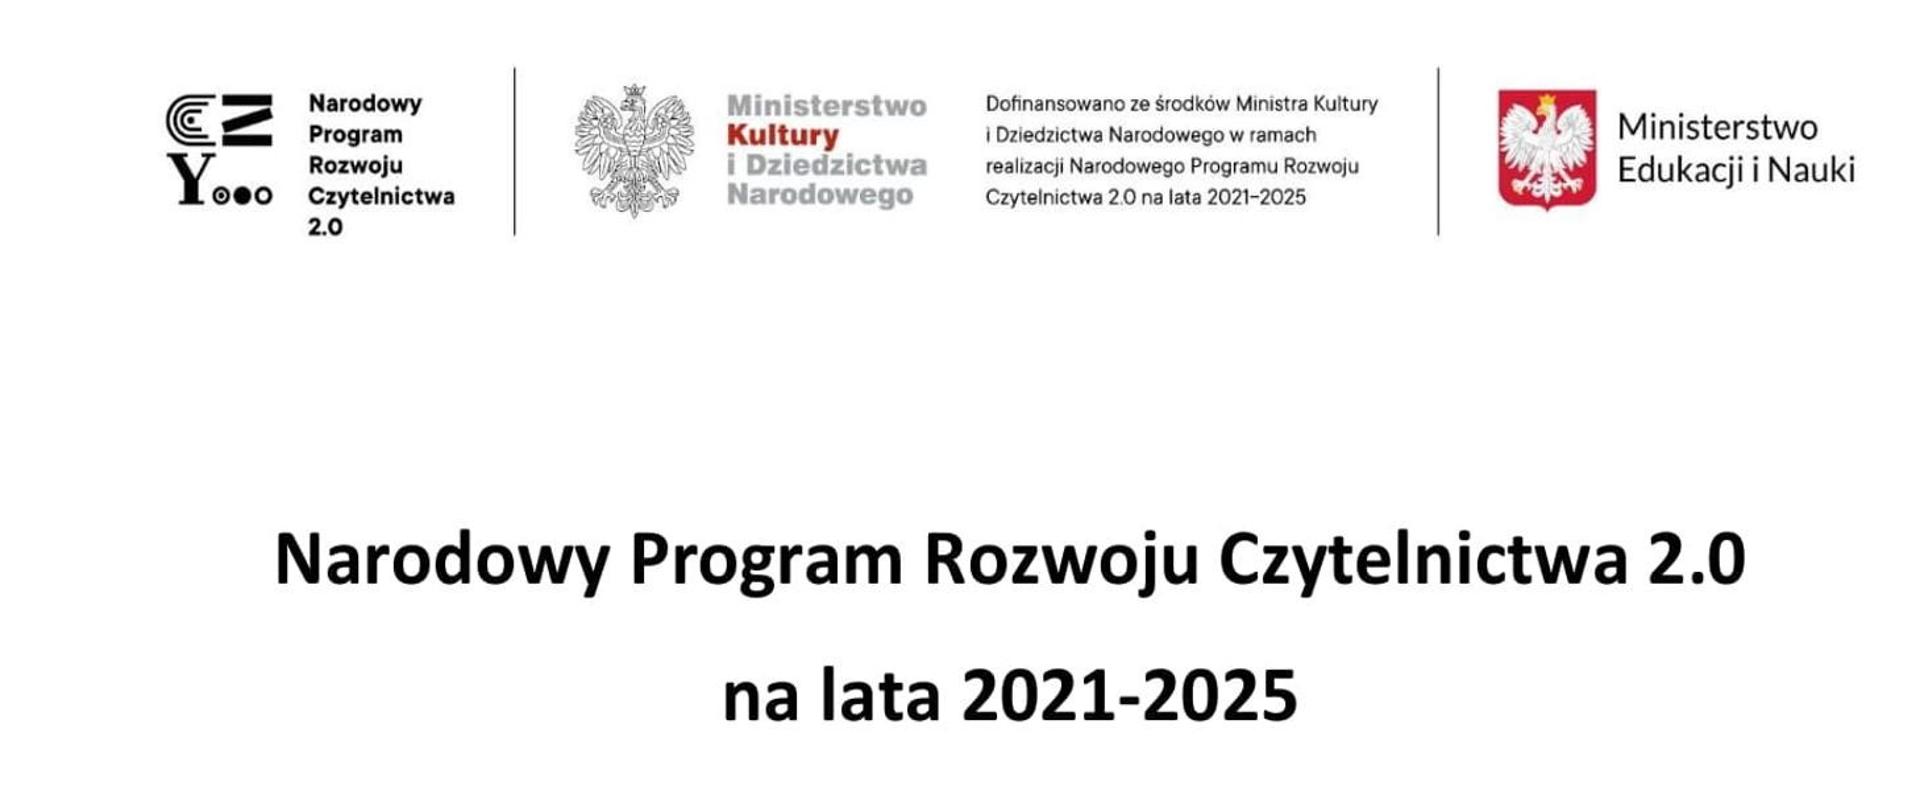 Logotypy Narodowego Programu Rozwoju Czytelnictwa 2.0 Ministerstwa Kultury i Ministerstwa Edukacji, poniżej tekst: Narodowy Program Rozwoju Czytelnictwa 2.0 na lata 2021-2025